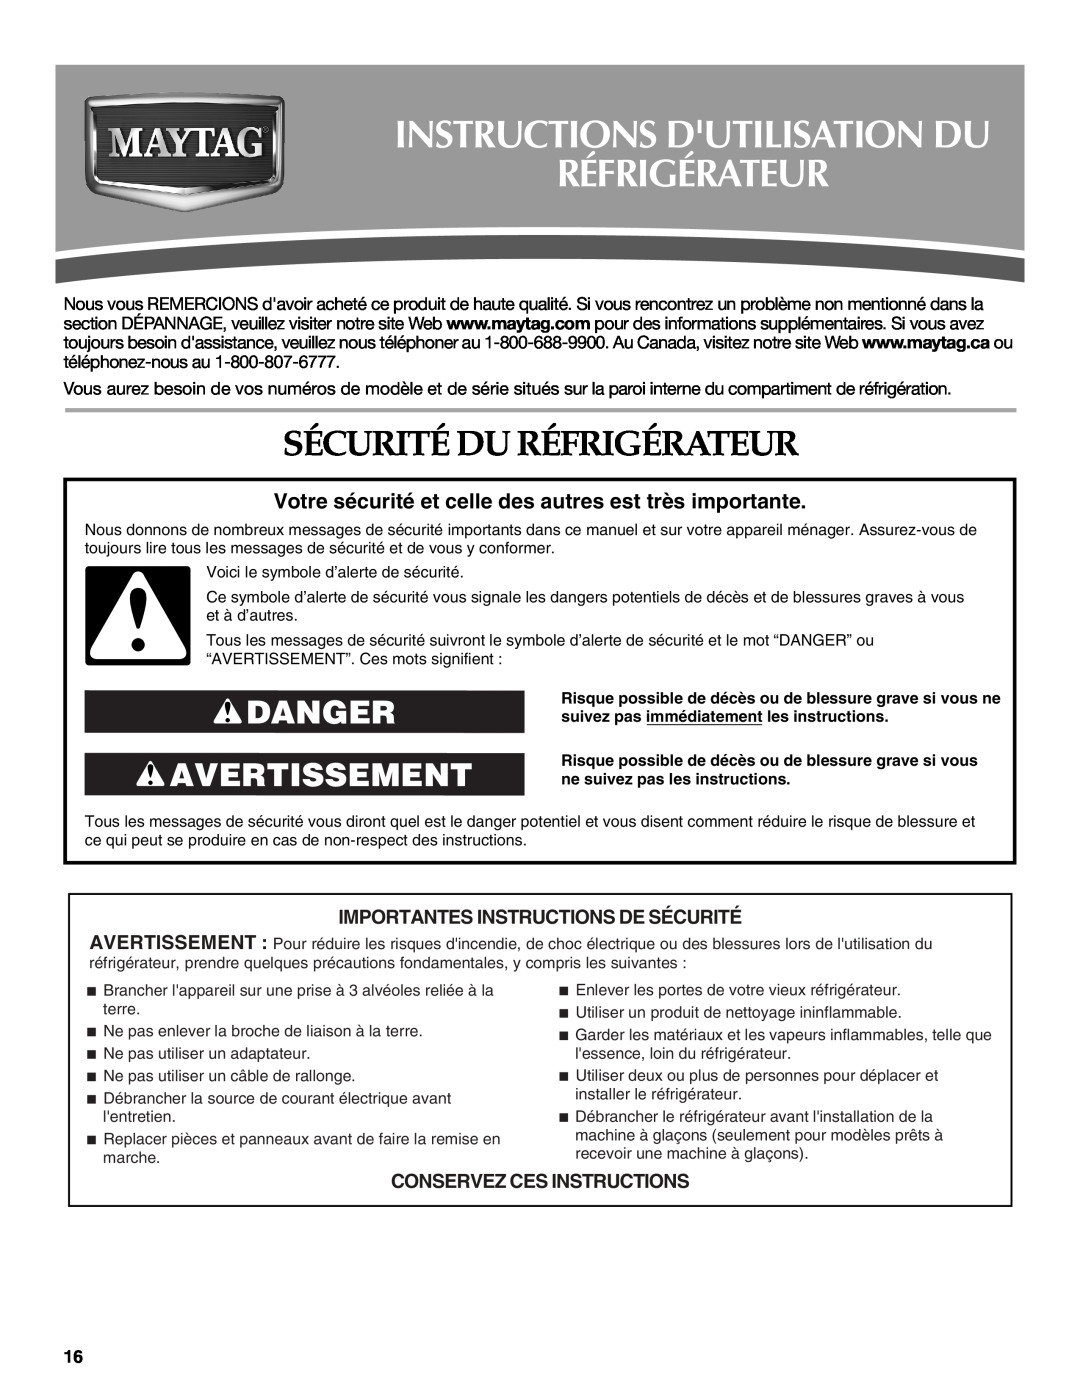 Maytag W10249206A, W10249207A Instructions Dutilisation Du Réfrigérateur, Sécurité Du Réfrigérateur, Danger Avertissement 